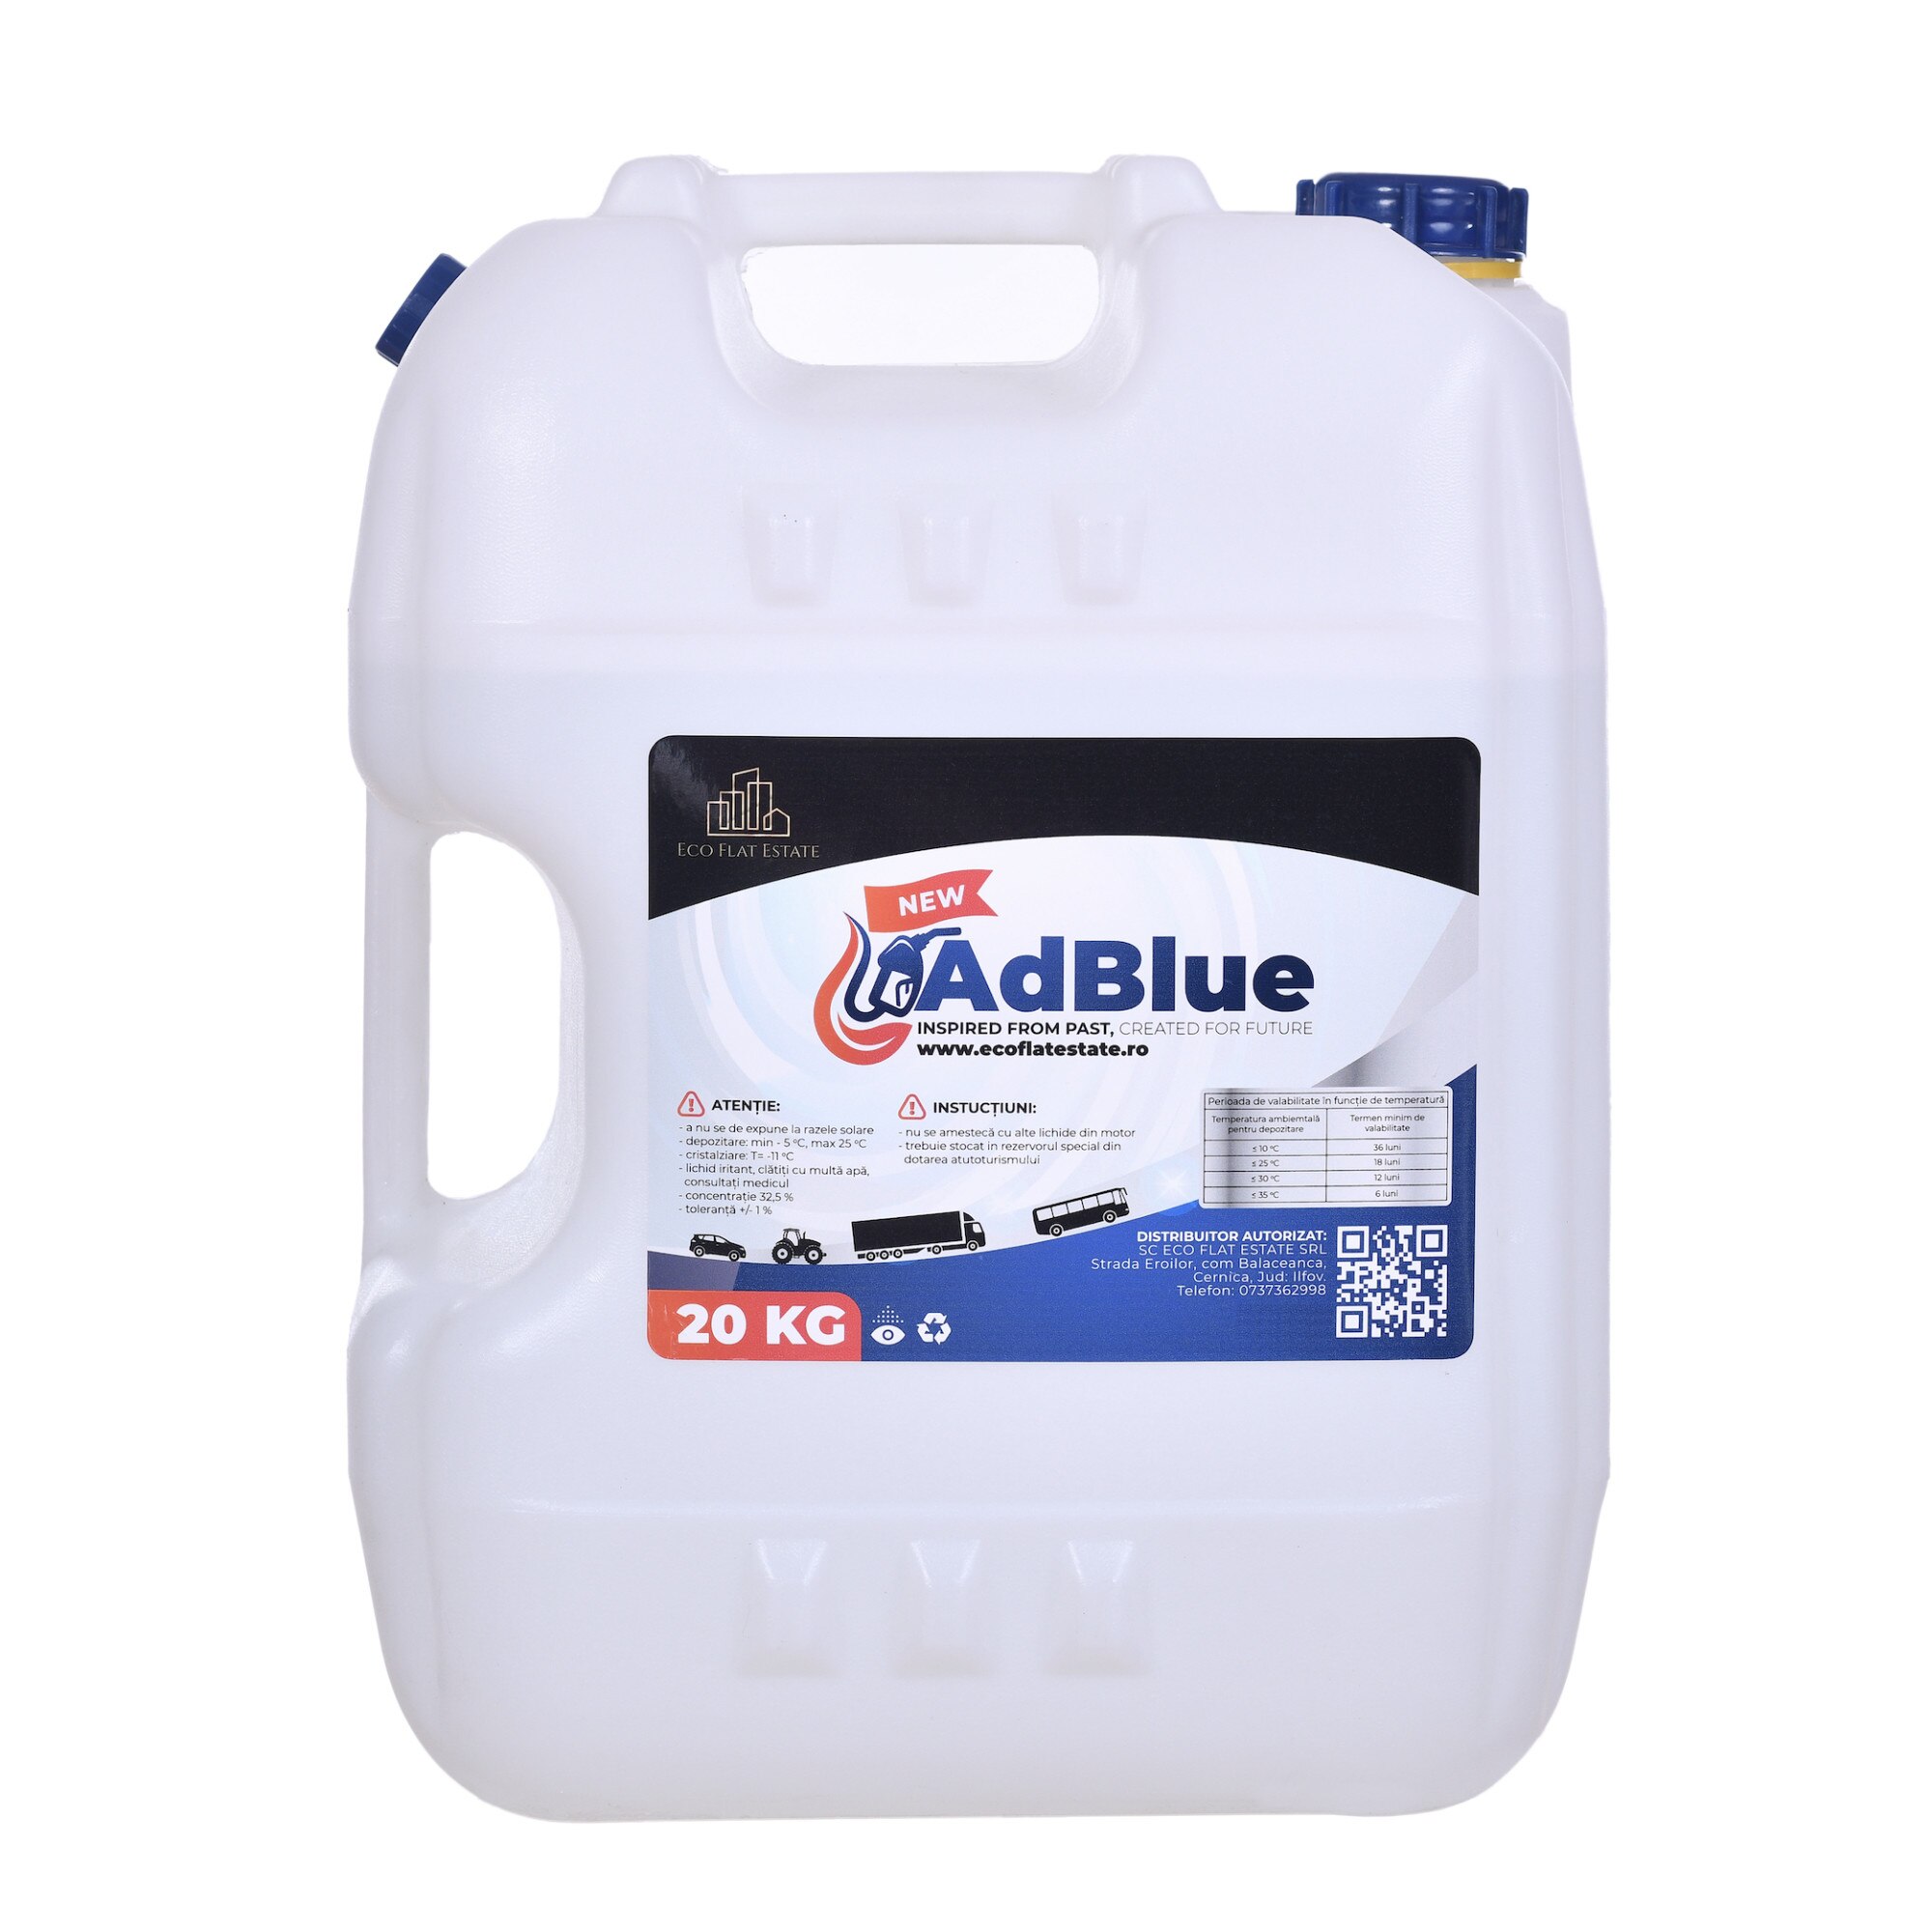  2 x 20L AdBlue® - en bidon de 20 L - ISO 22241-1